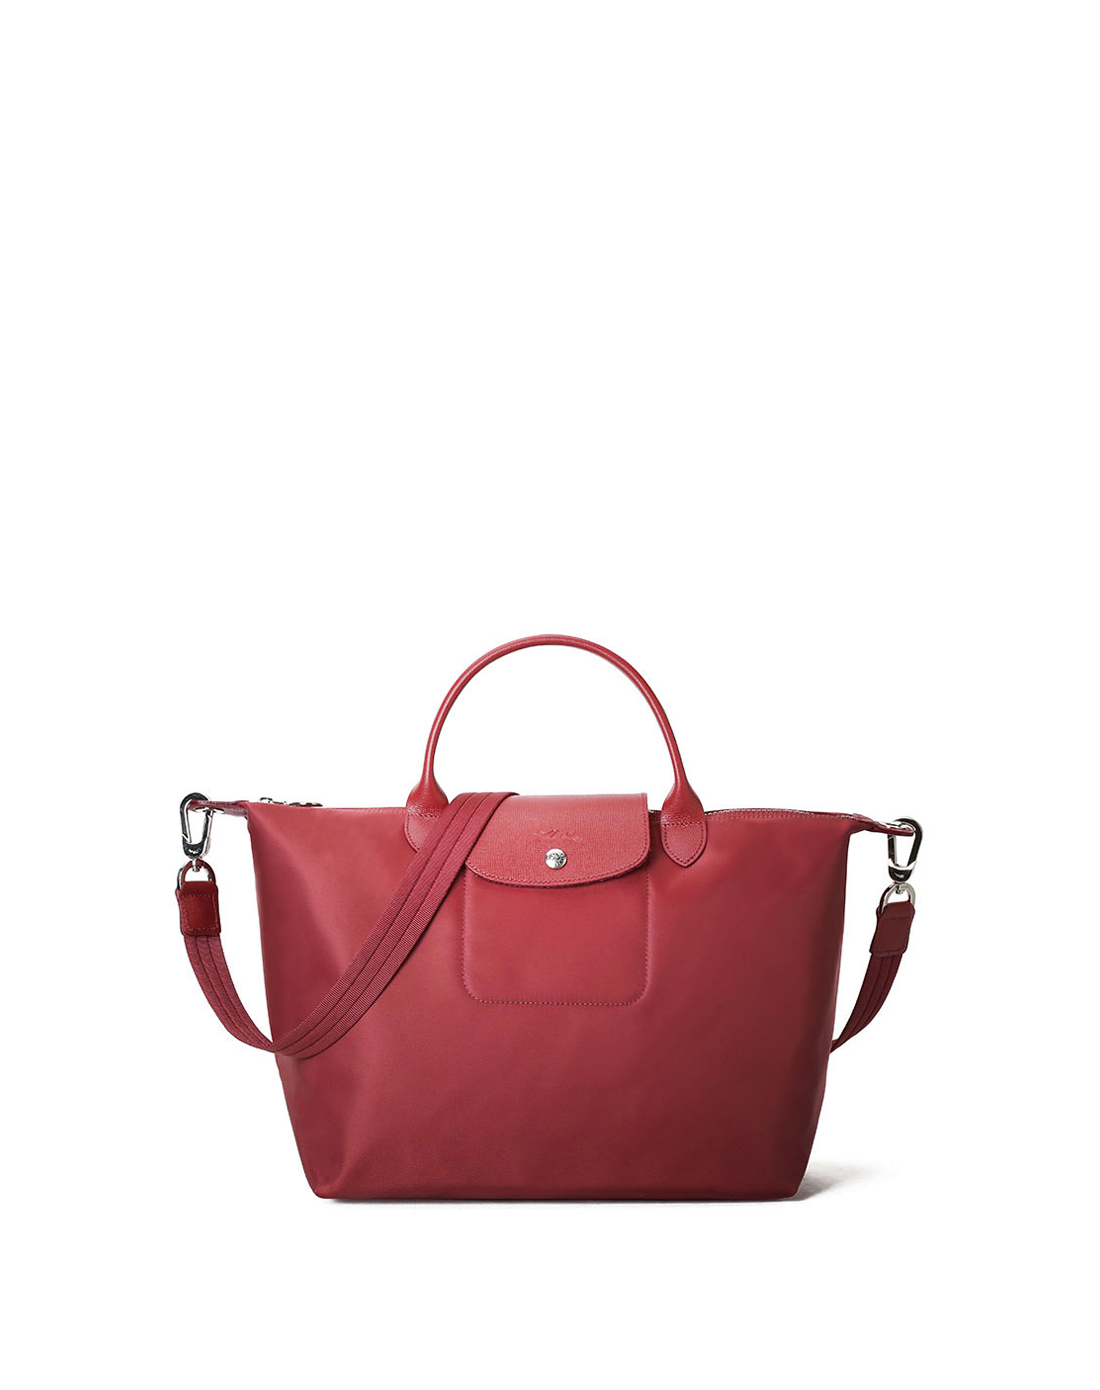 推荐Longchamp 珑骧 帆布红色女士手提包 1515578545商品